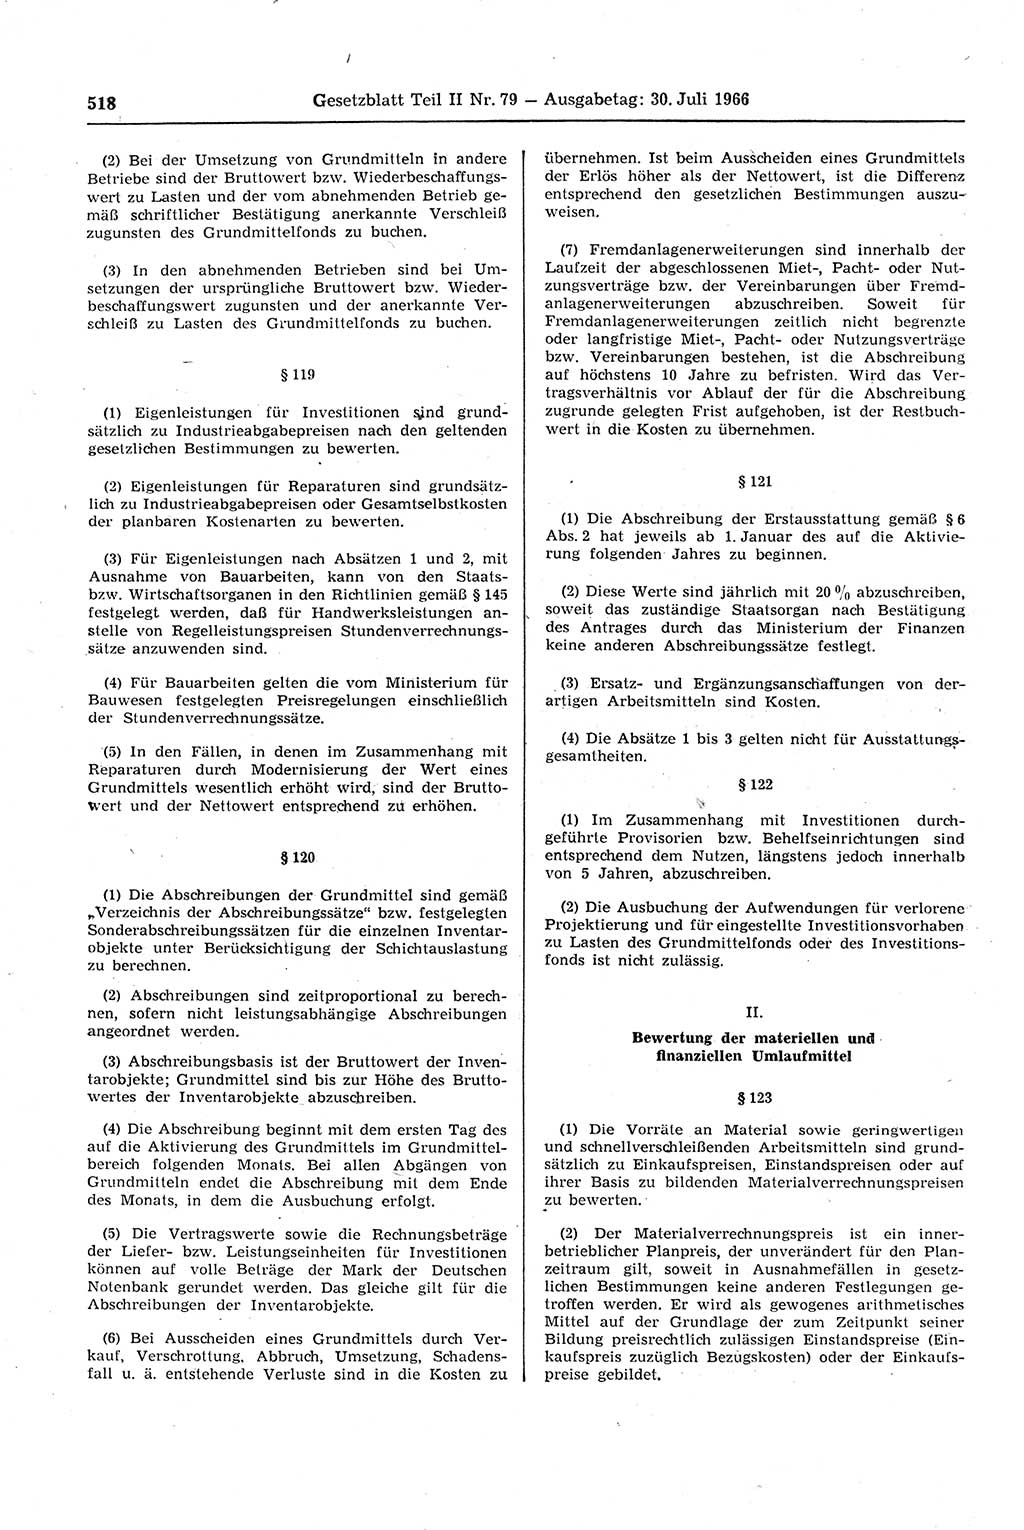 Gesetzblatt (GBl.) der Deutschen Demokratischen Republik (DDR) Teil ⅠⅠ 1966, Seite 518 (GBl. DDR ⅠⅠ 1966, S. 518)